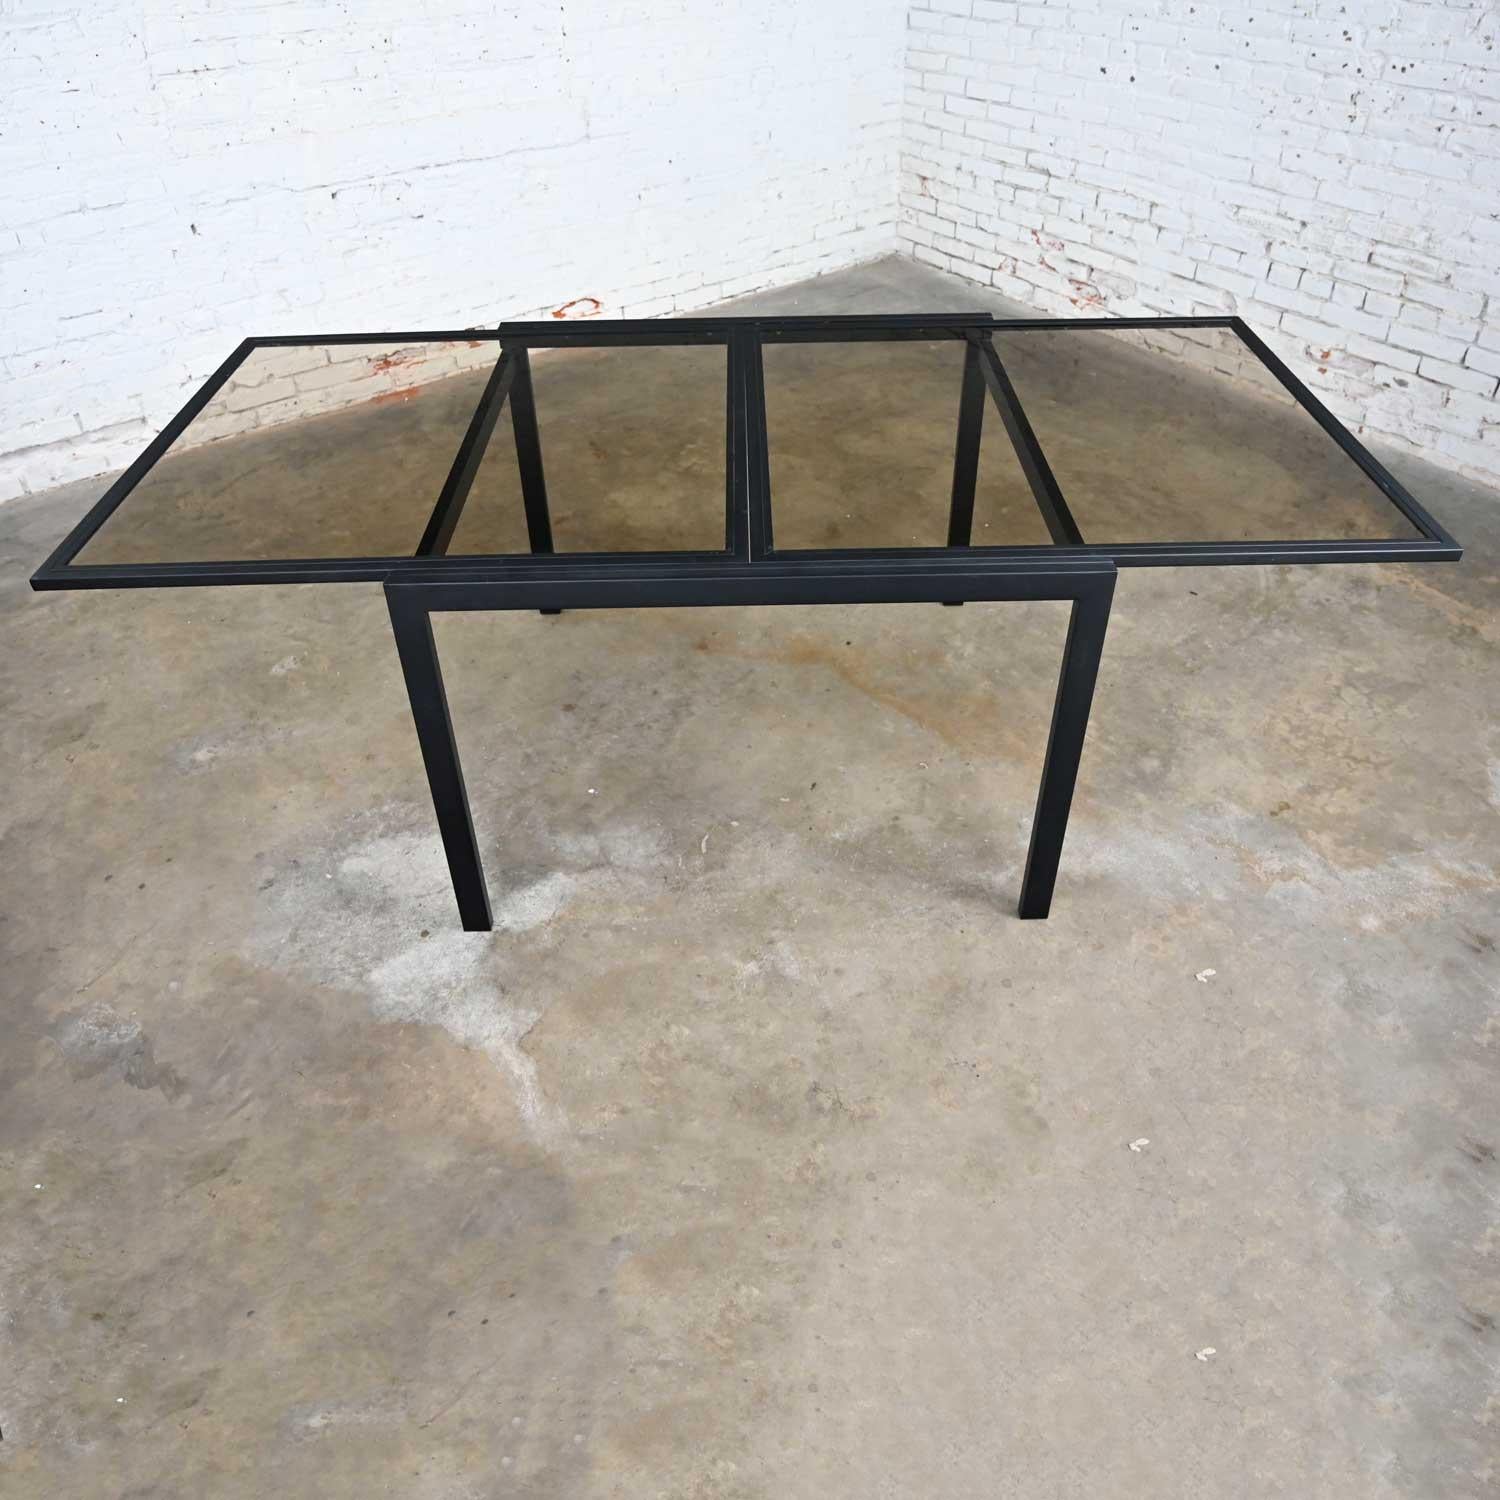 Fabuleuse table d'expansion carrée en métal noir revêtu de poudre et en verre fumé, attribuée au DIA (Design Institute of America). En très bon état, gardez à l'esprit qu'il s'agit d'un objet vintage et non neuf, qui présente donc des signes